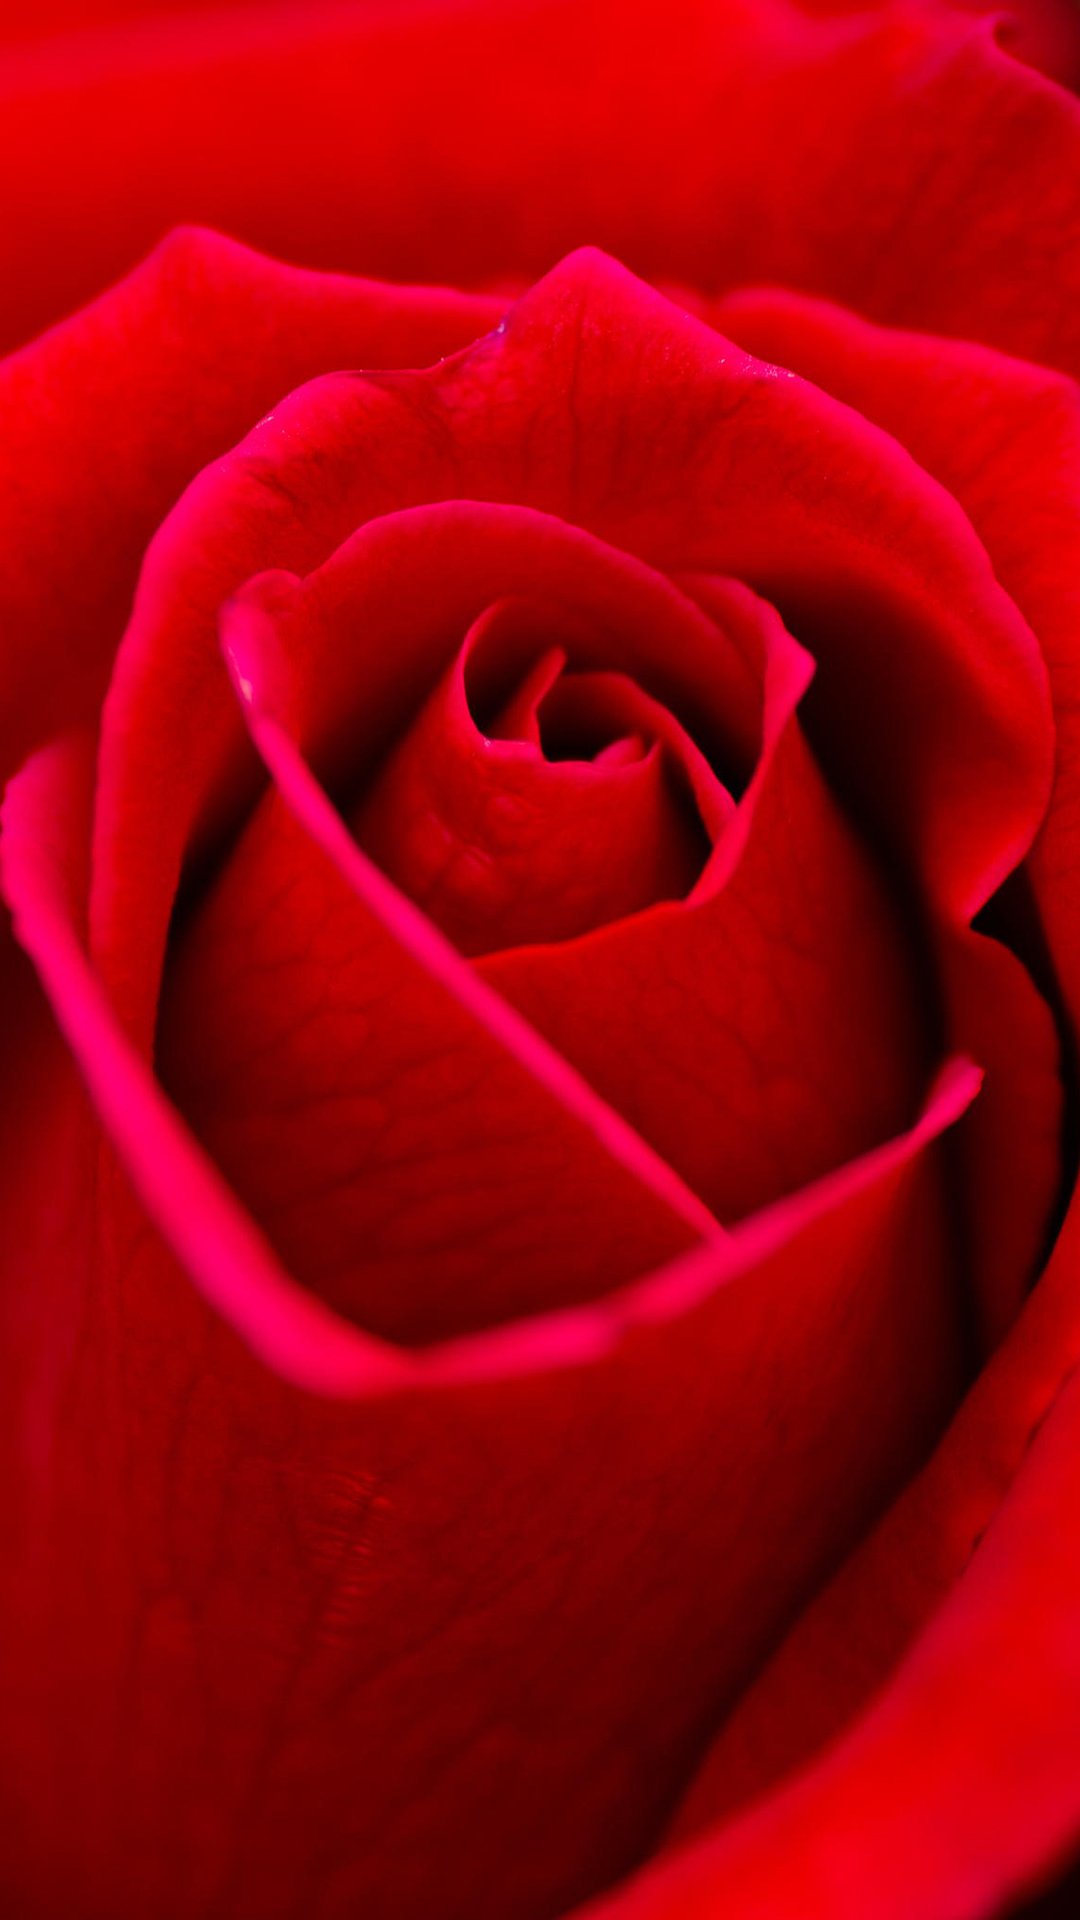 red rose wallpaper, rose, garden roses, red, petal, flower